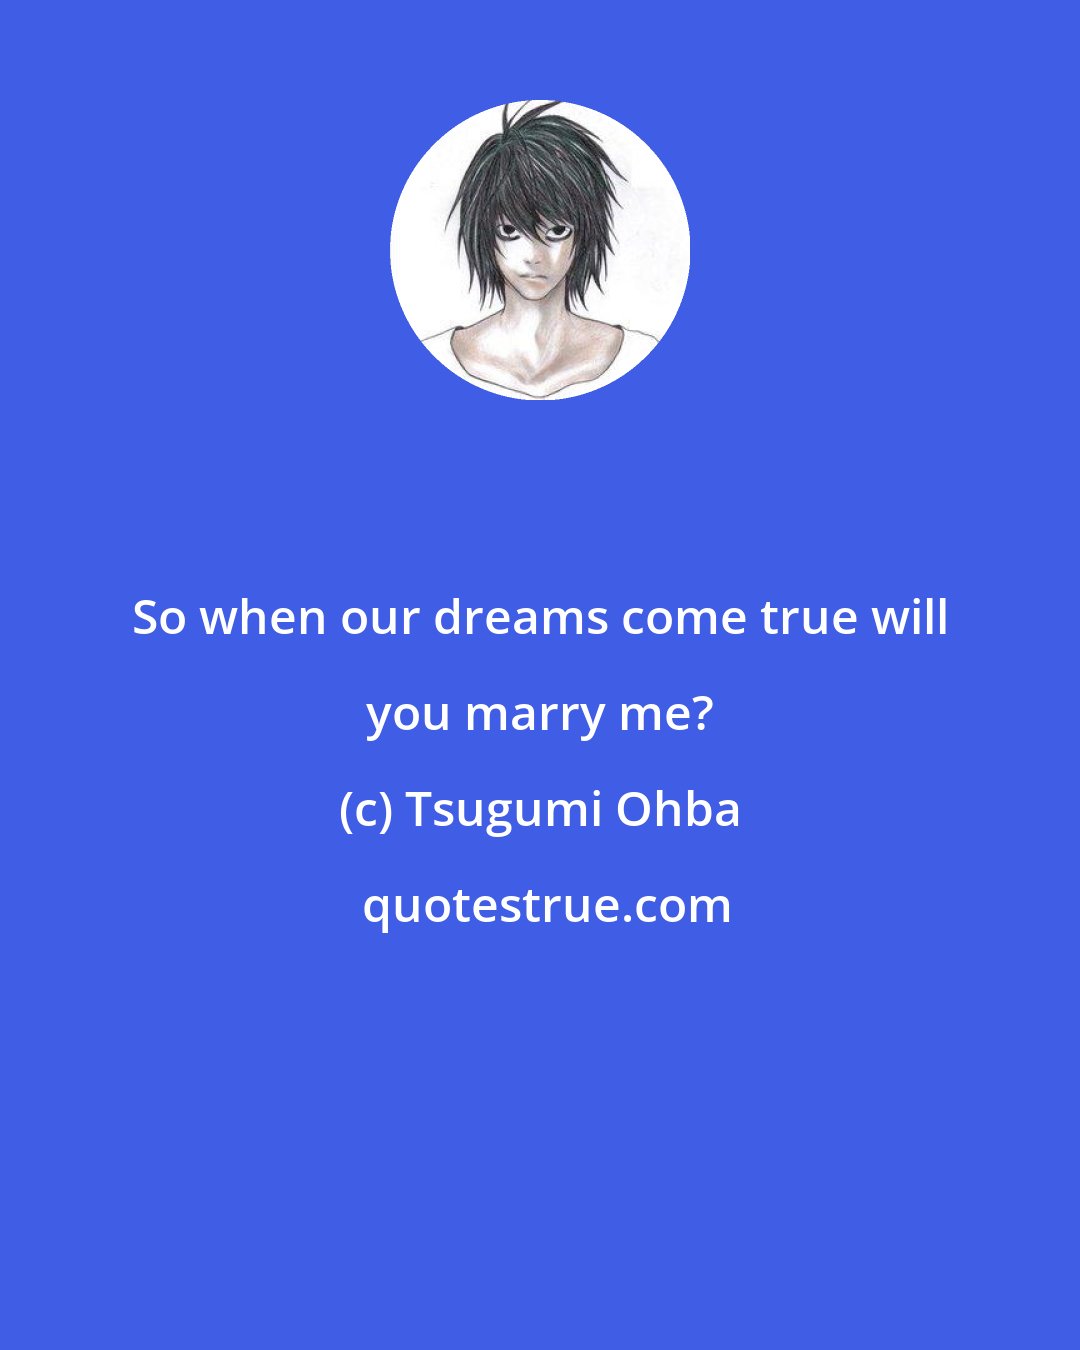 Tsugumi Ohba: So when our dreams come true will you marry me?